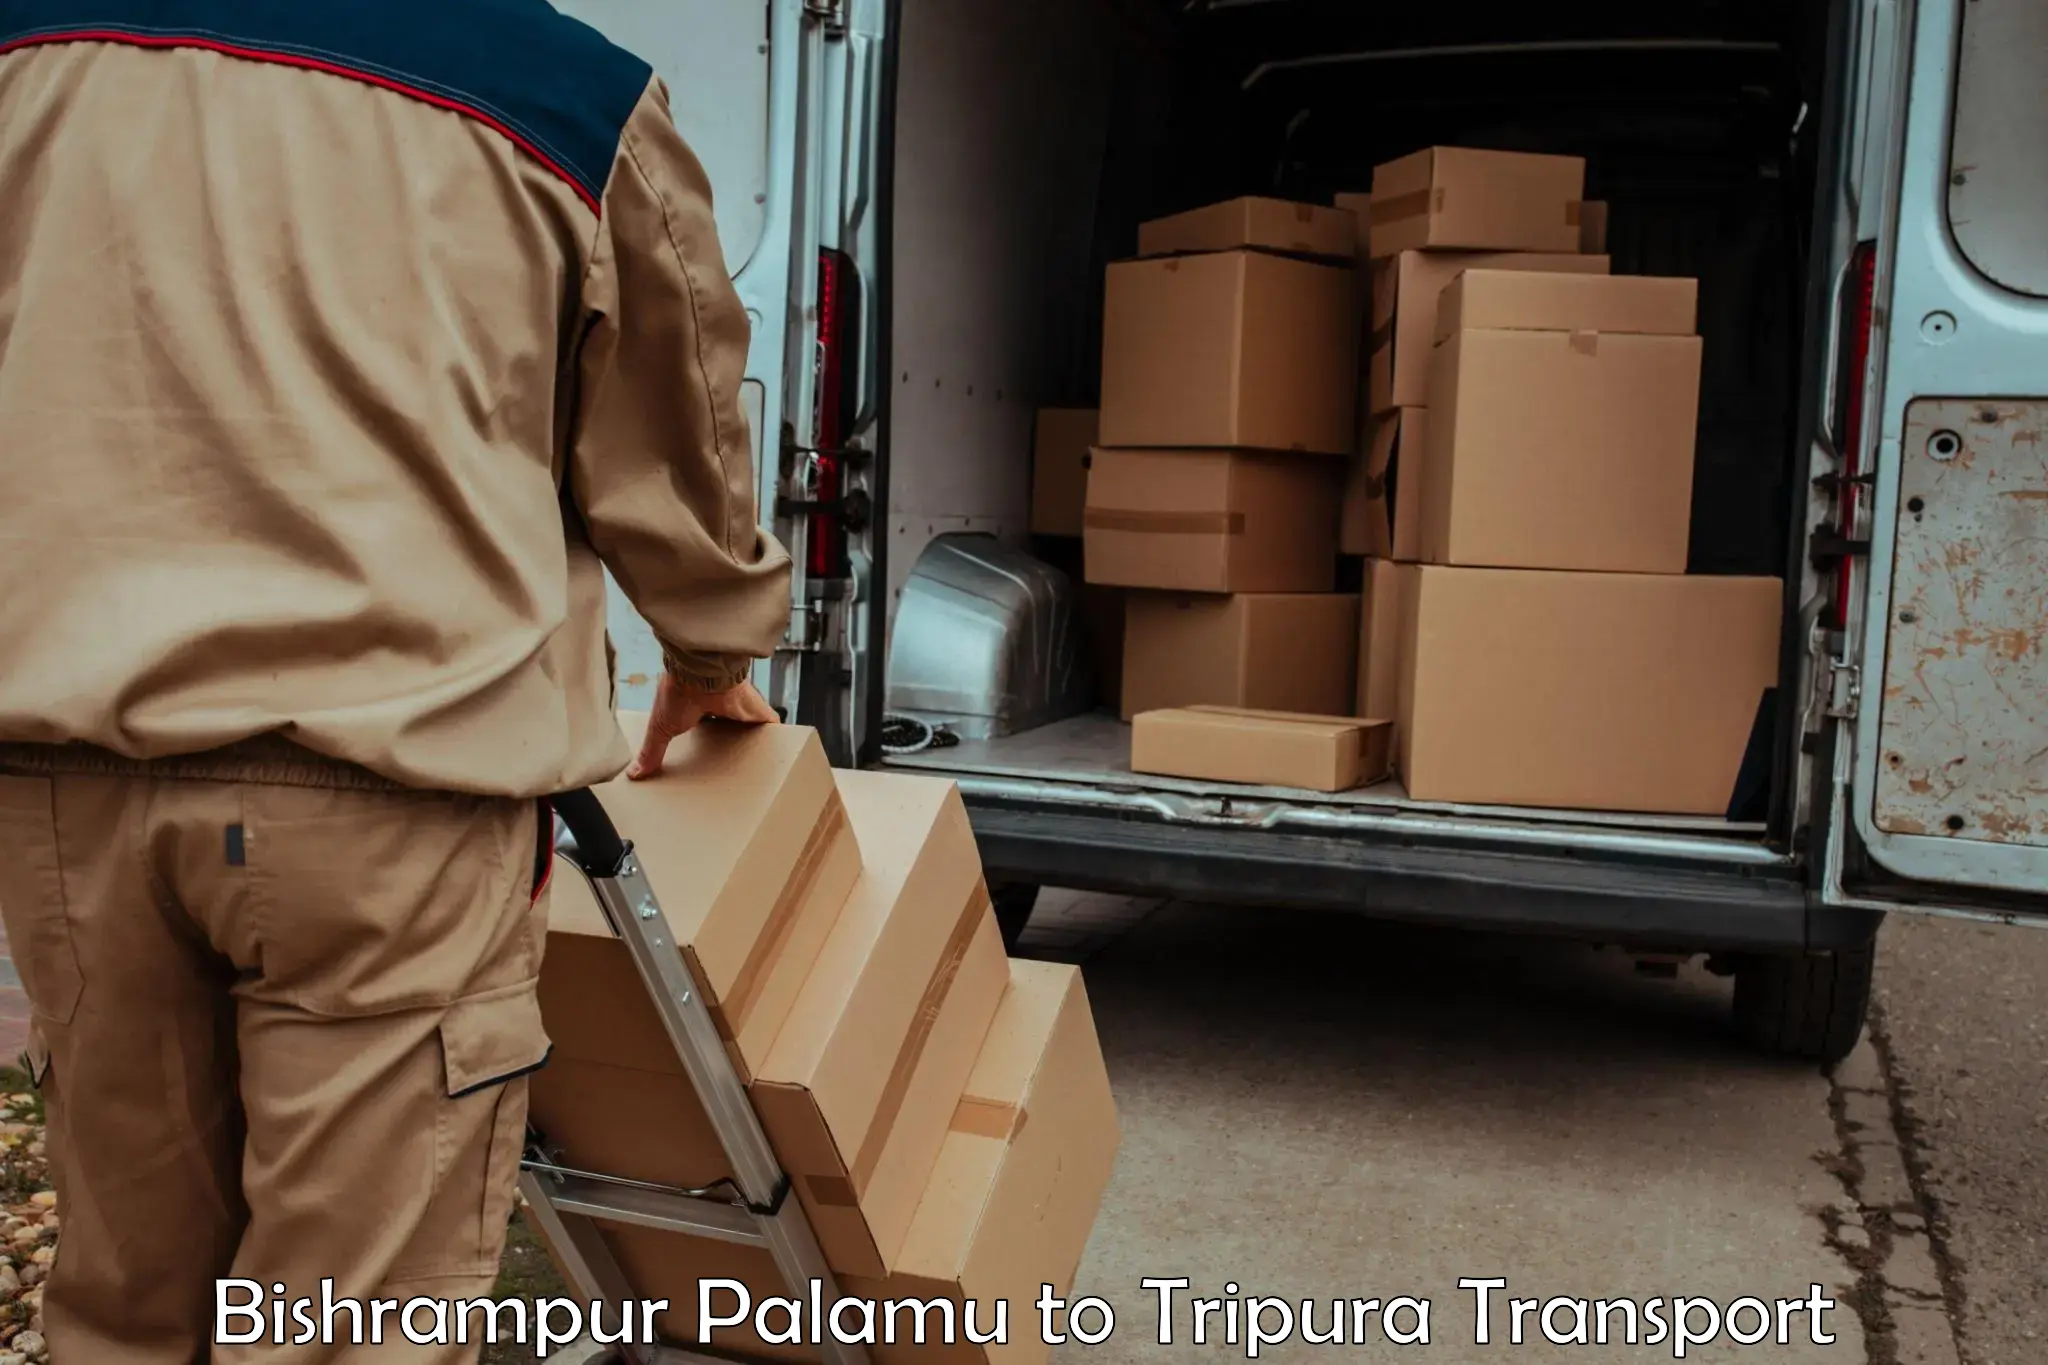 Cargo transportation services in Bishrampur Palamu to Manughat